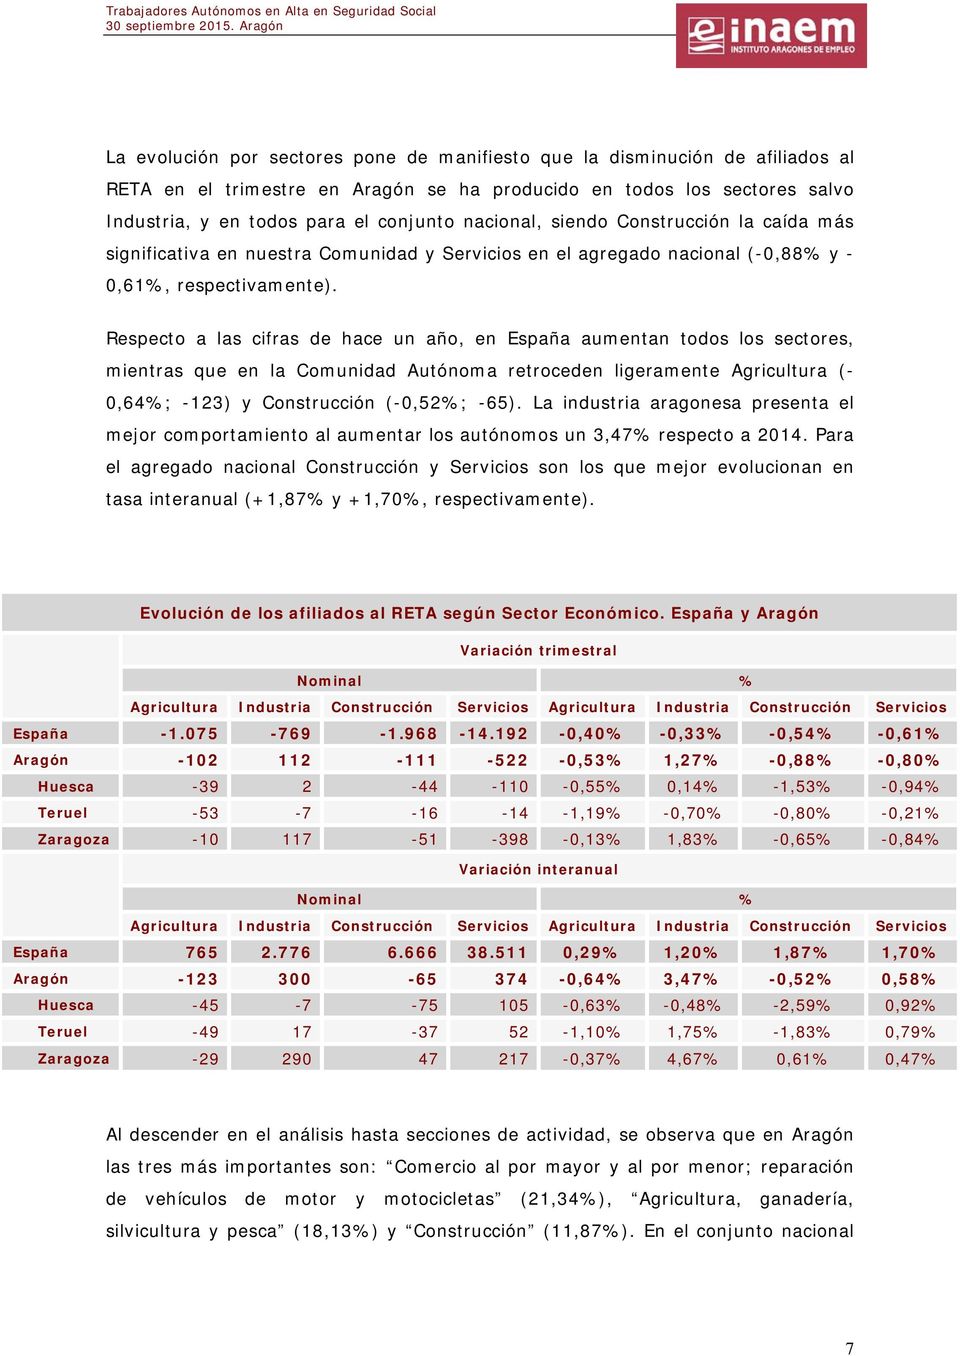 Respecto a las cifras de hace un año, en España aumentan todos los sectores, mientras que en la Comunidad Autónoma retroceden ligeramente Agricultura (- 0,64%; -123) y Construcción (-0,52%; -65).